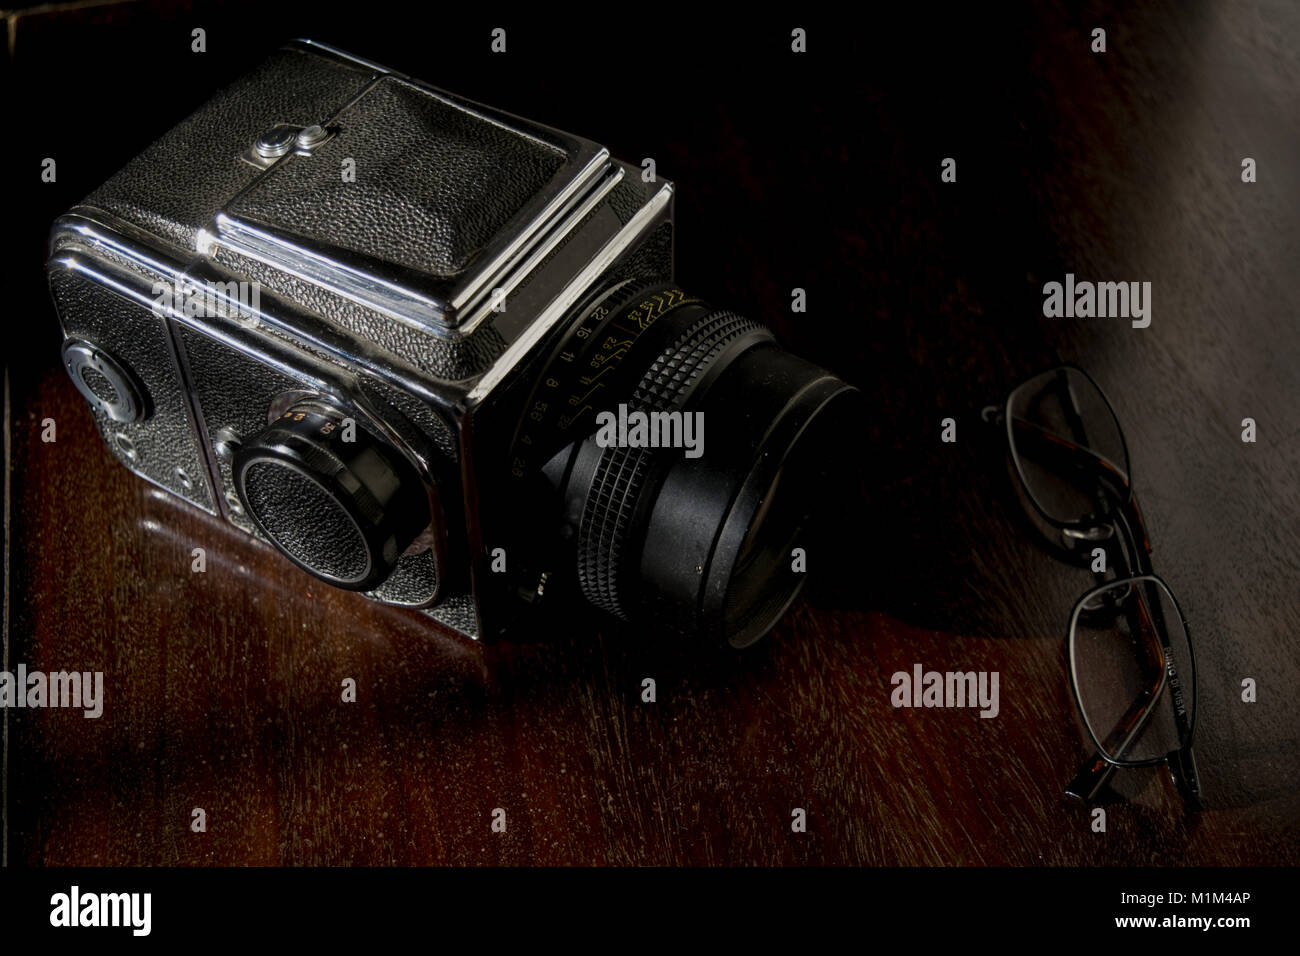 Vecchia macchina fotografica e una coppia di specifiche sulla credenza in legno Foto Stock